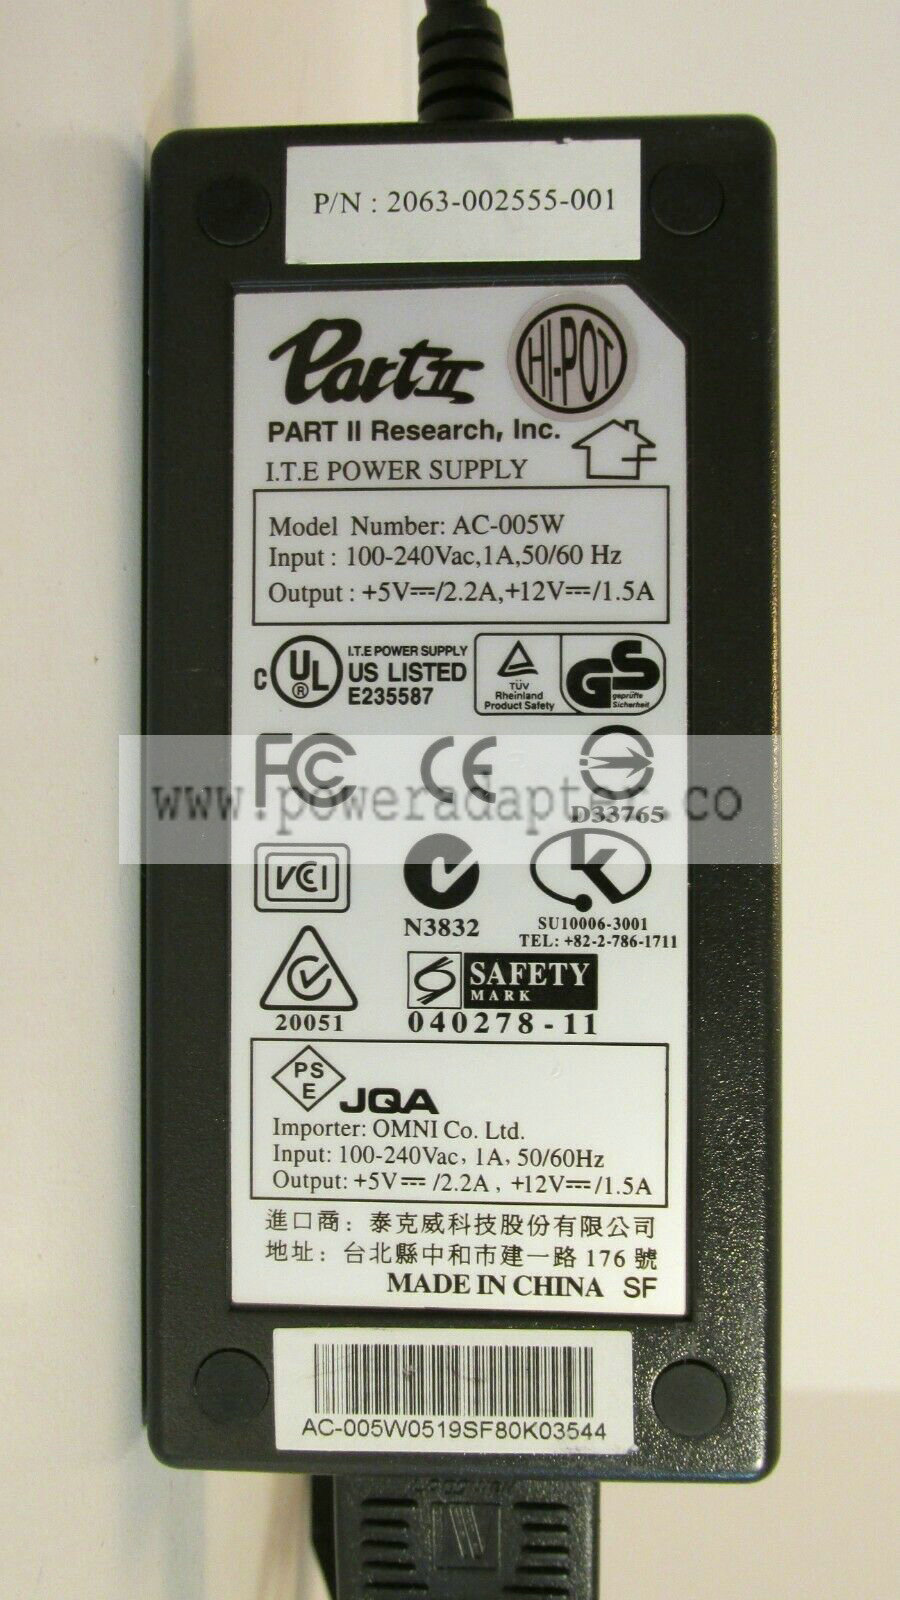 Genuine Yamaha AC Adapter Power Supply DC12V 700mA 12.5W Model: PA-3C 12V INPUT POWER: AC100V 50/60Hz 16VAOUTPUT POW - Click Image to Close